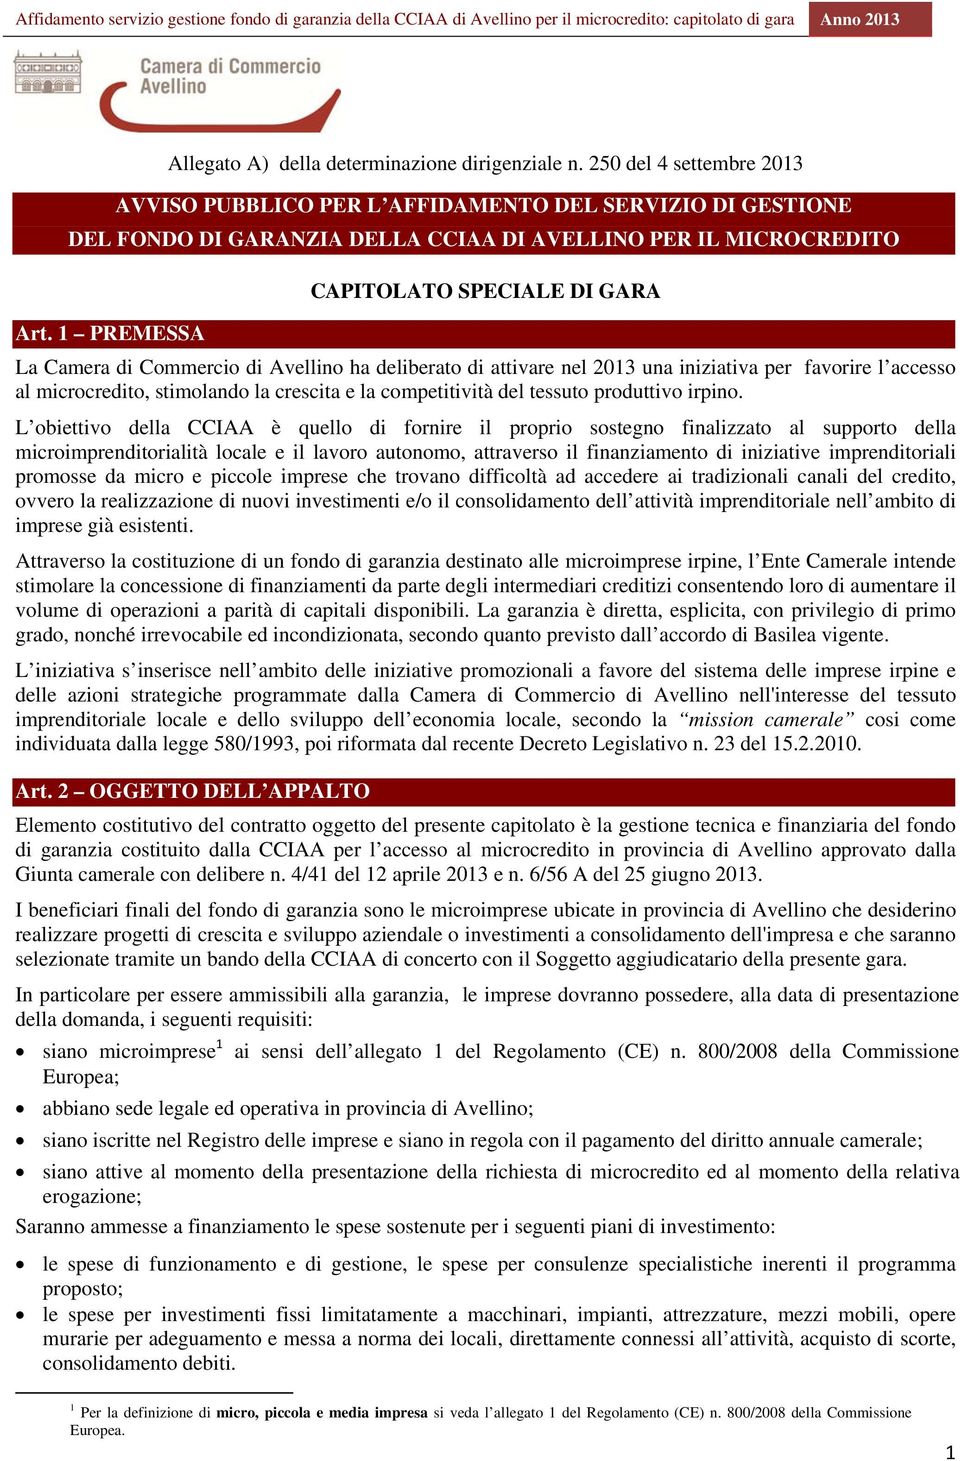 1 PREMESSA La Camera di Commercio di Avellino ha deliberato di attivare nel 2013 una iniziativa per favorire l accesso al microcredito, stimolando la crescita e la competitività del tessuto